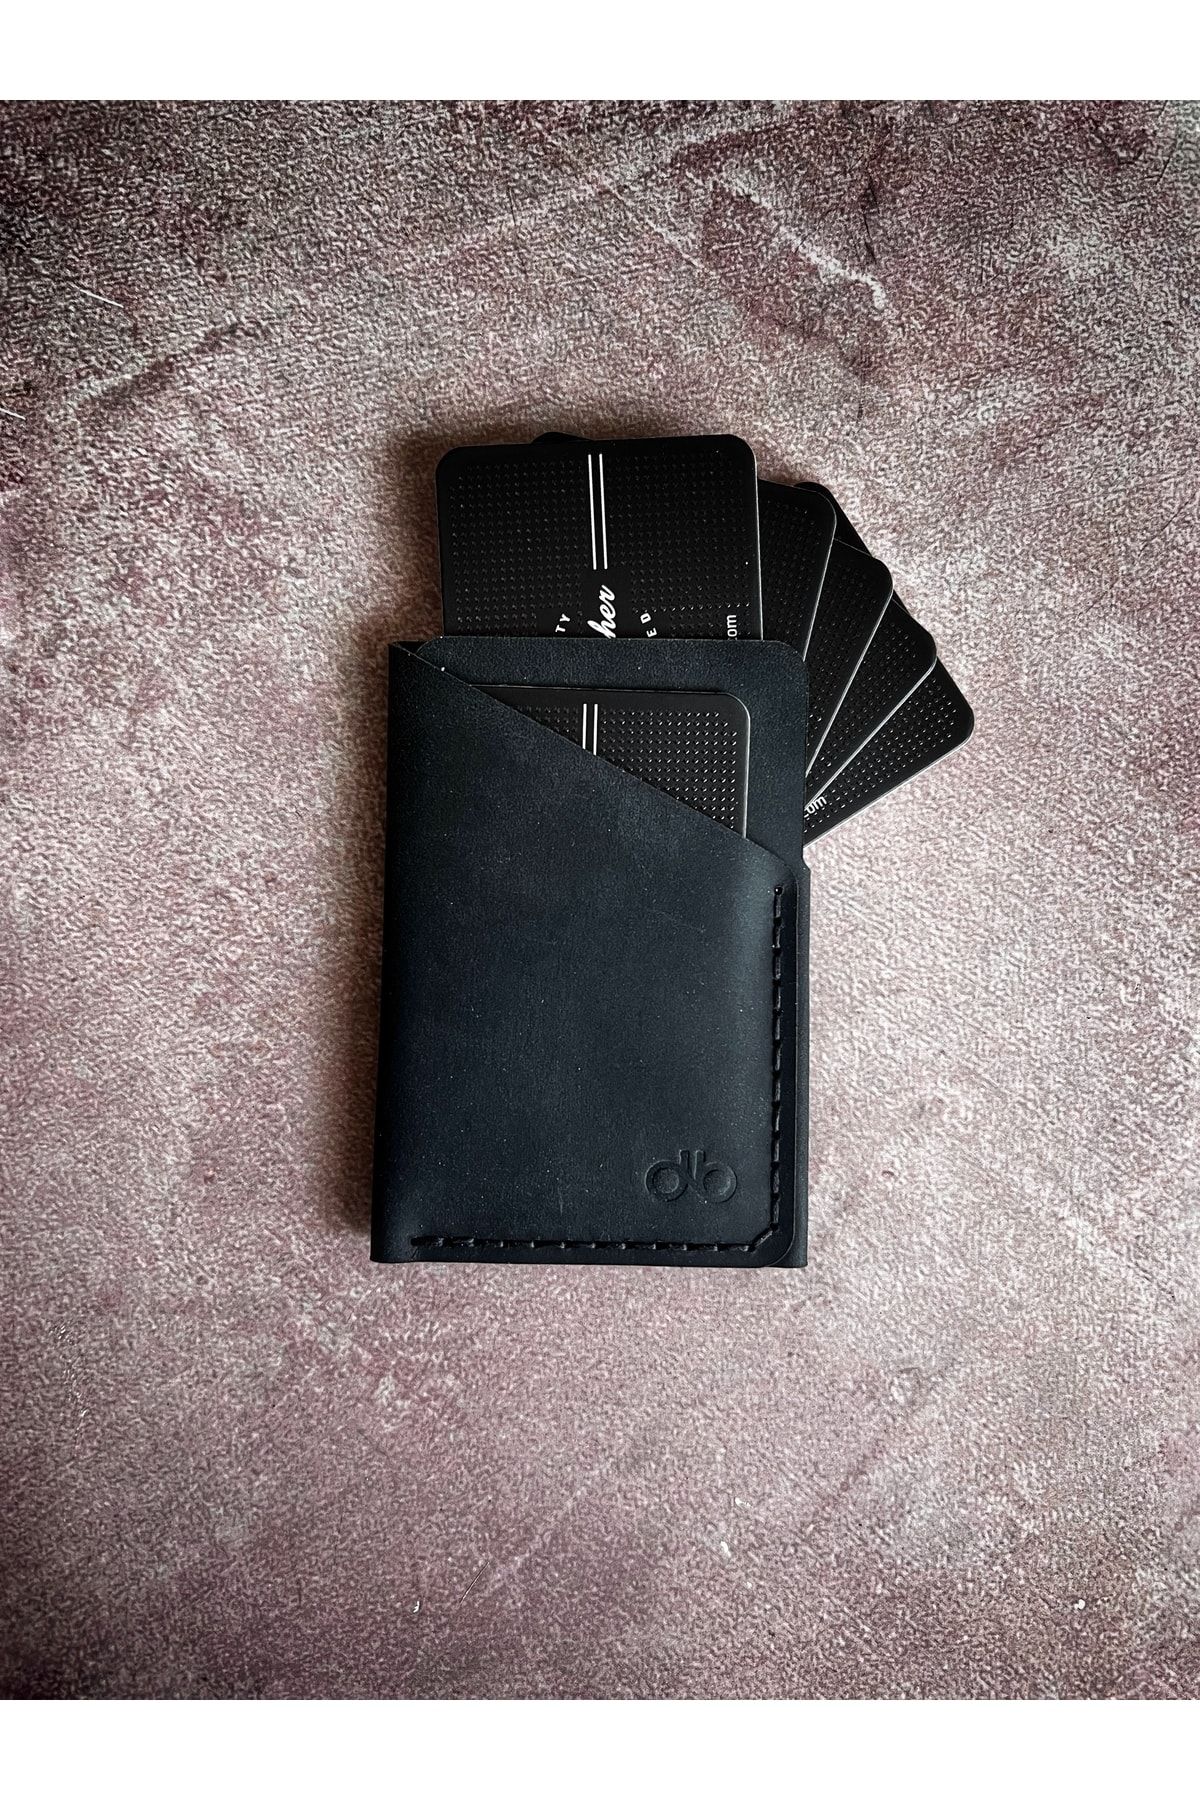 Safir Leather Siyah Renk Gerçek Deri Kartlık - El Yapımı, Şık Ve Dayanıklı